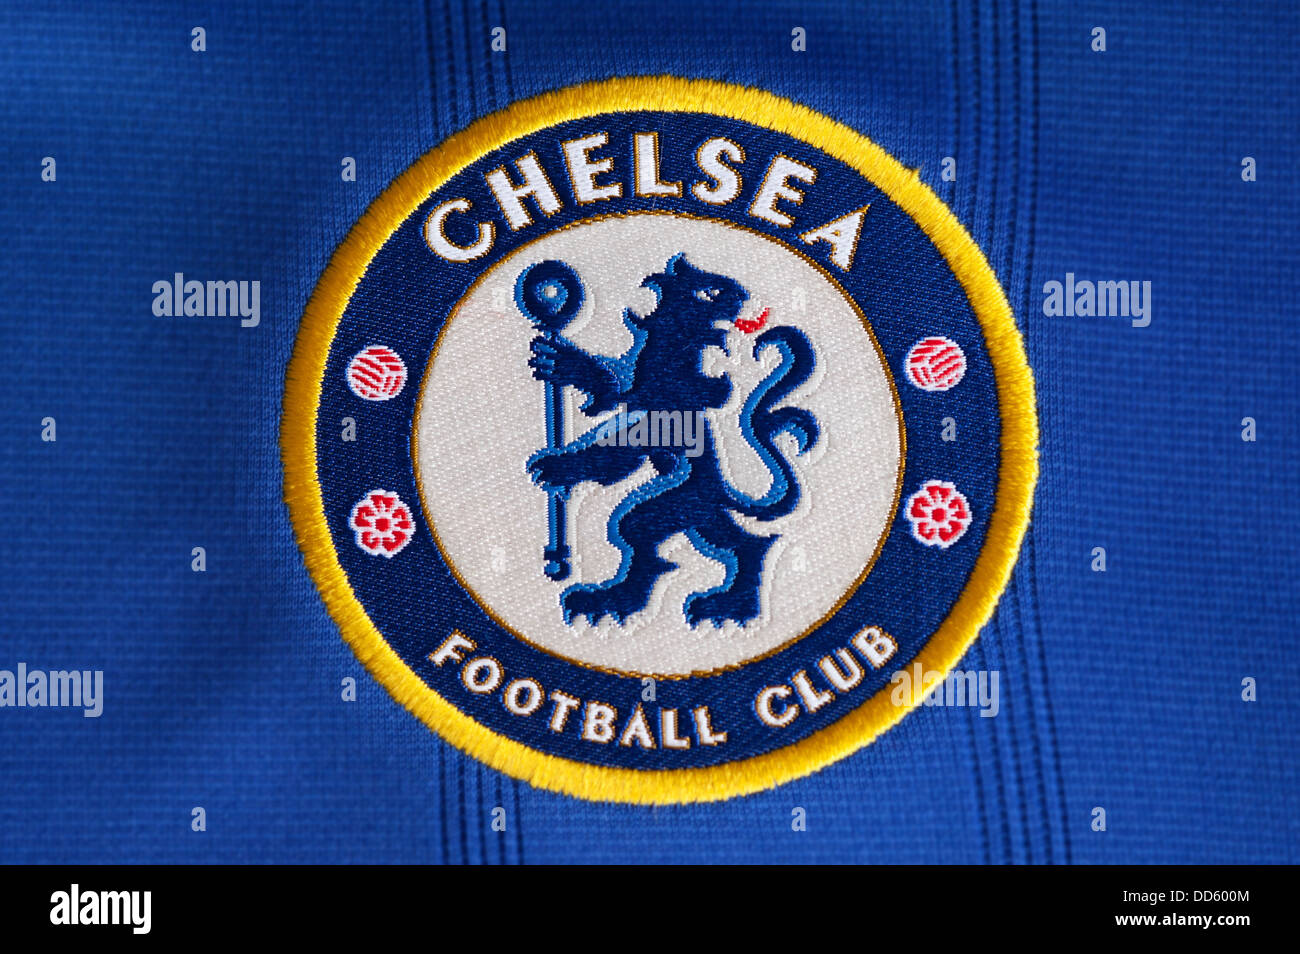 FC Chelsea Club Crest Banque D'Images